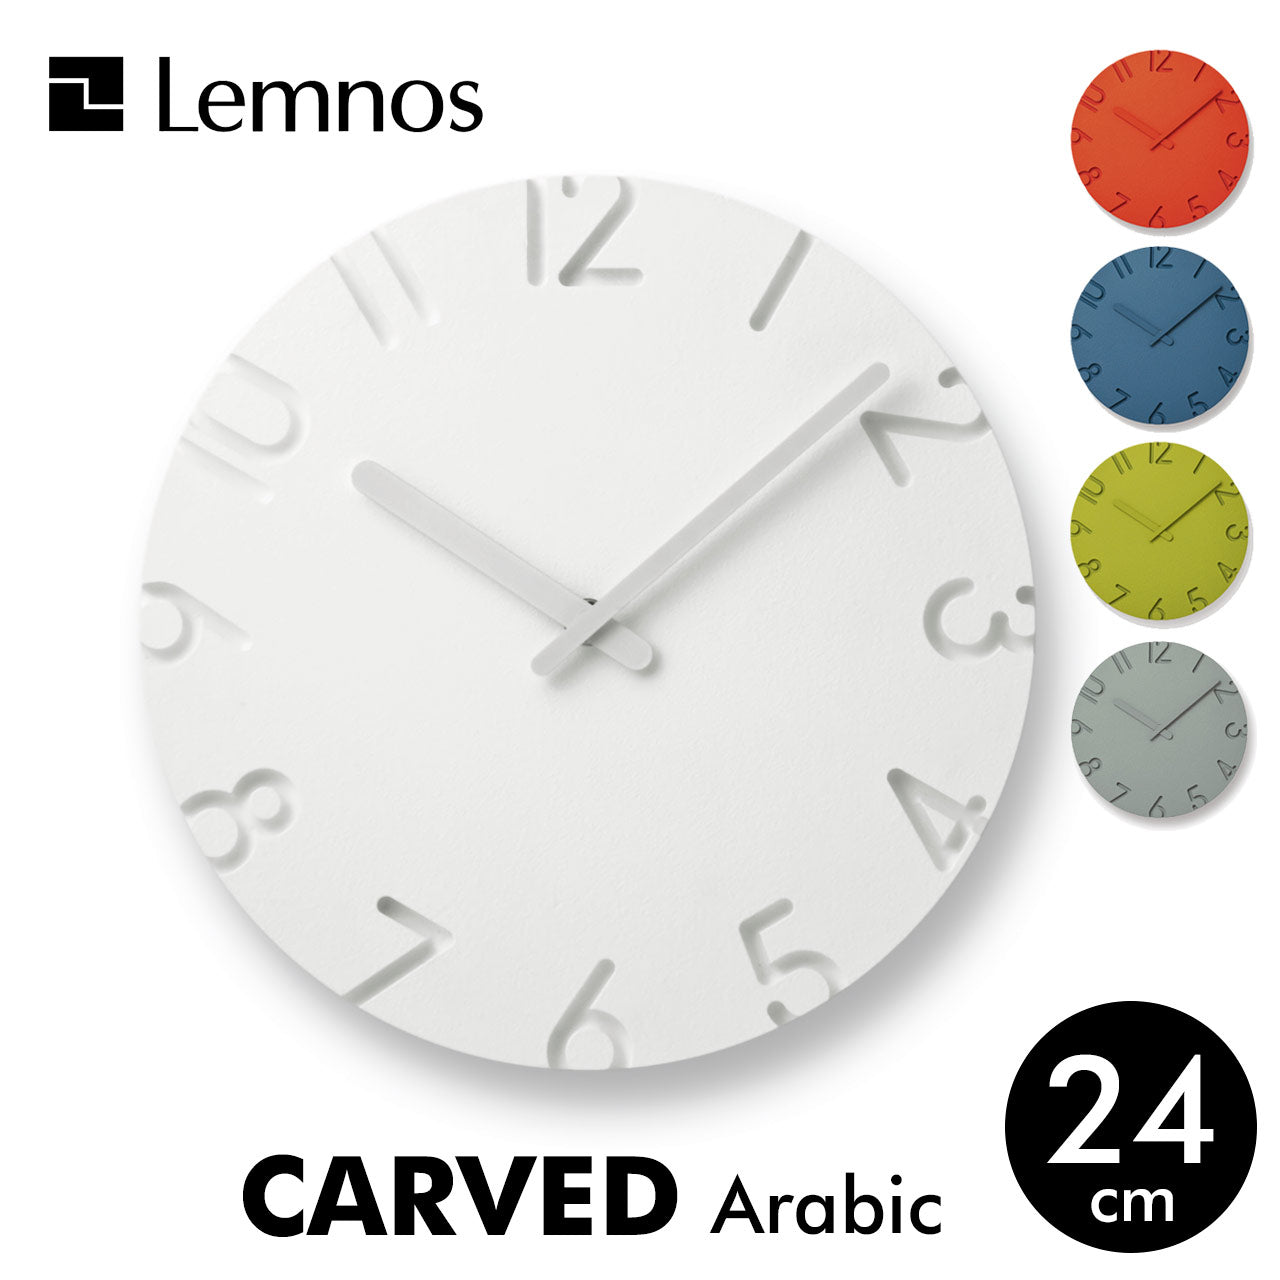 レムノス CARVED 壁掛け時計 Arabic / Colored 24cm Lemnos – 生活雑貨